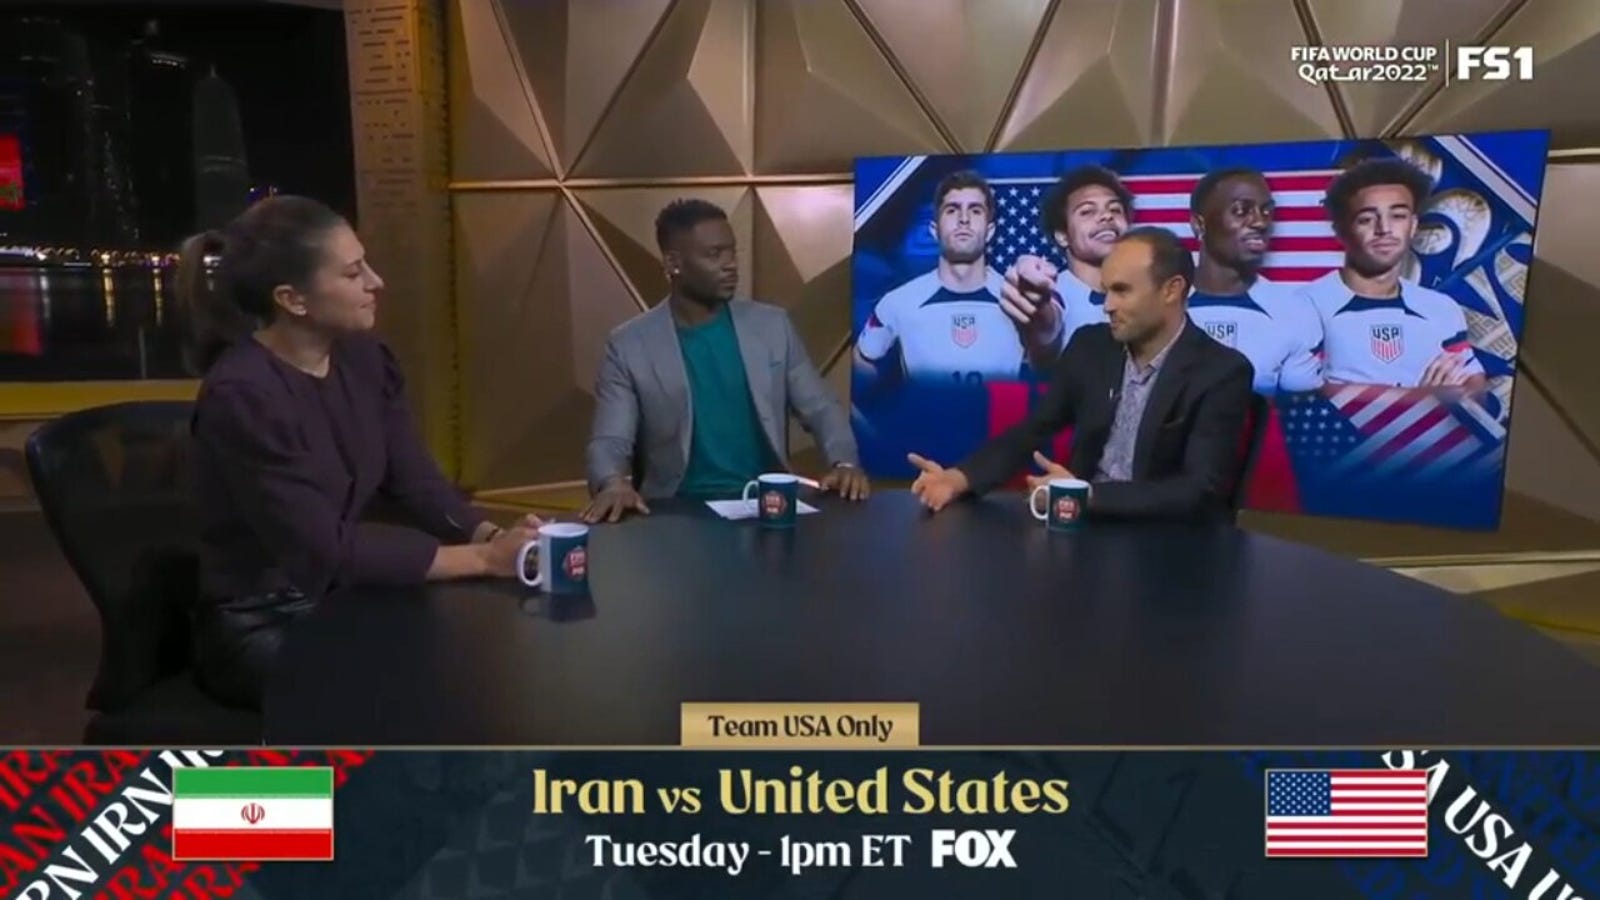 Vorschau Iran vs. USA: Scheidet die USMNT in der Gruppenphase aus? 